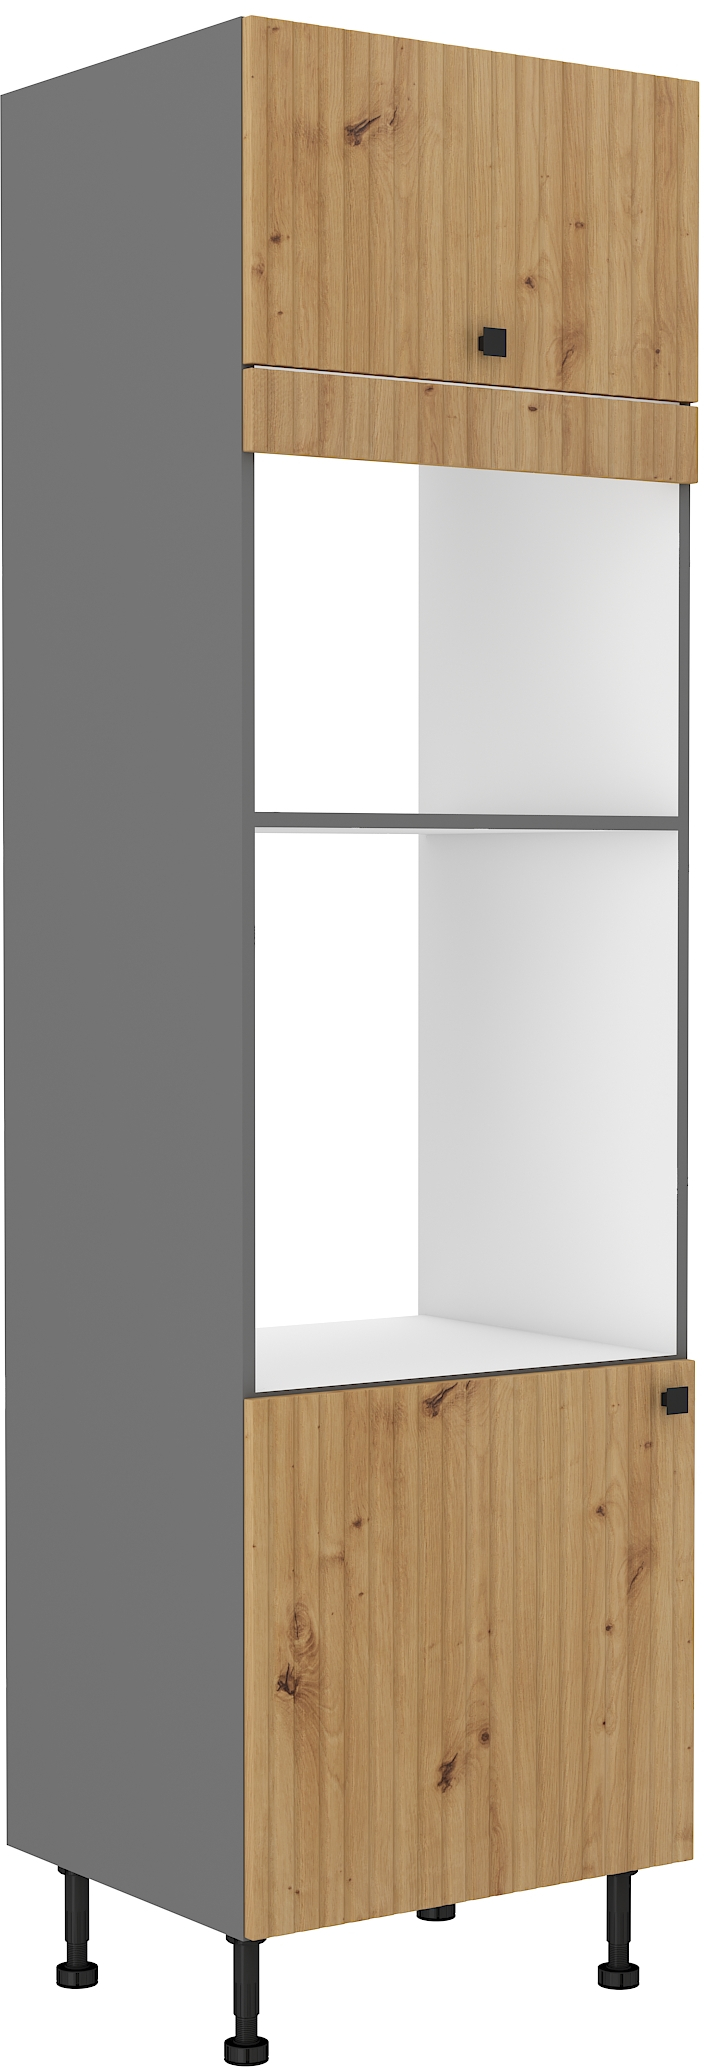 Vysoká skříňka na vestavnou a mikrovlnou troubu Ava 60 DPM-215 2F - bílá,dub artisan,antracit